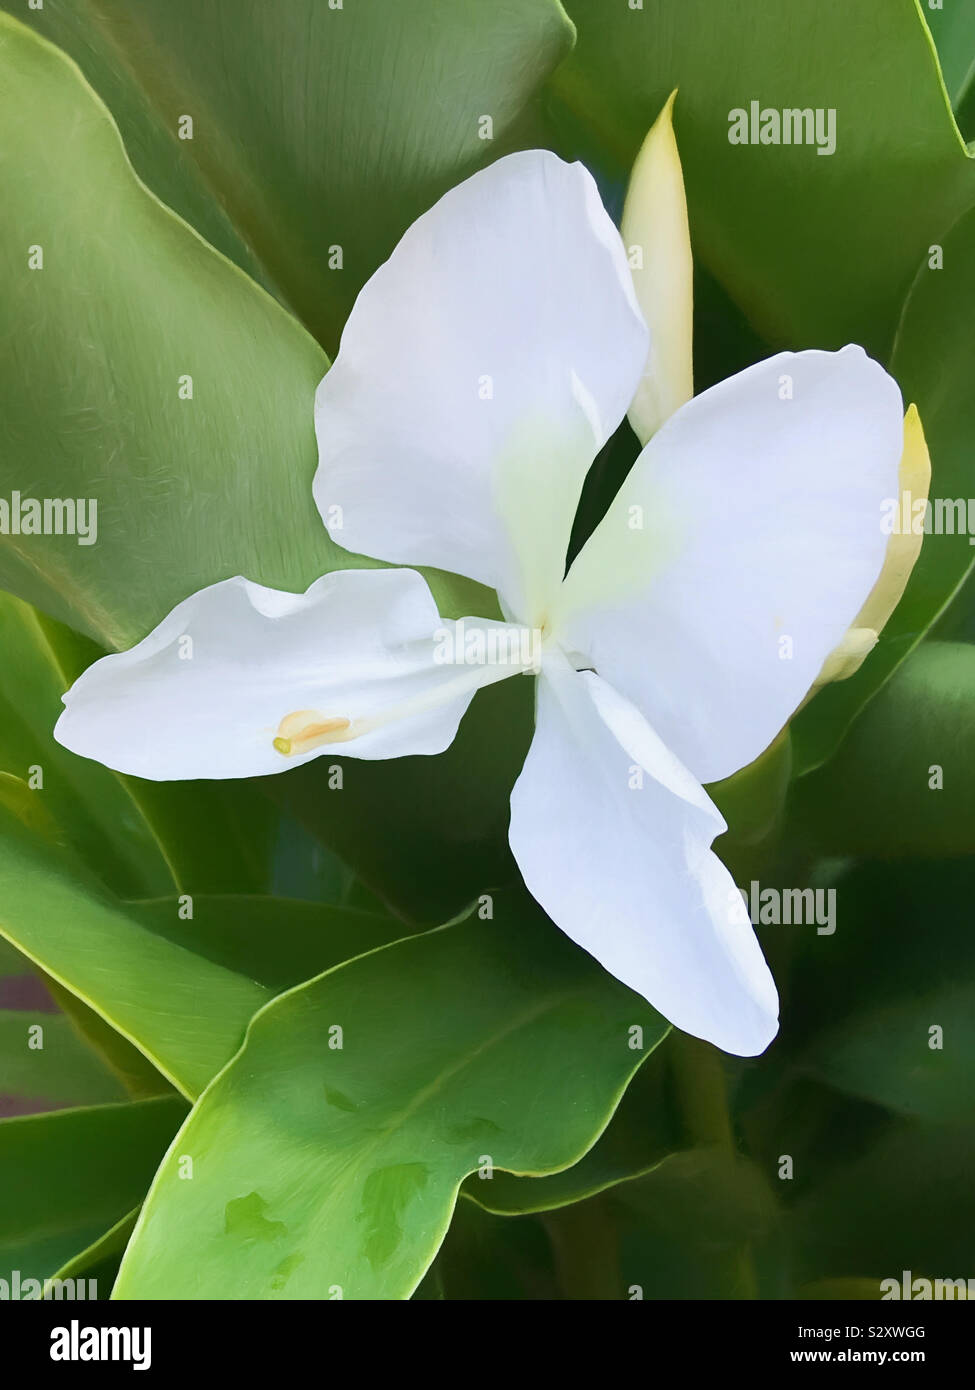 Weißes Ginger Lily Blume in voller Blüte in einem Hinterhof Blumenbeet. Seine duftenden Blüten haben Südlichen Gärten für Generationen geschmückt. Stockfoto